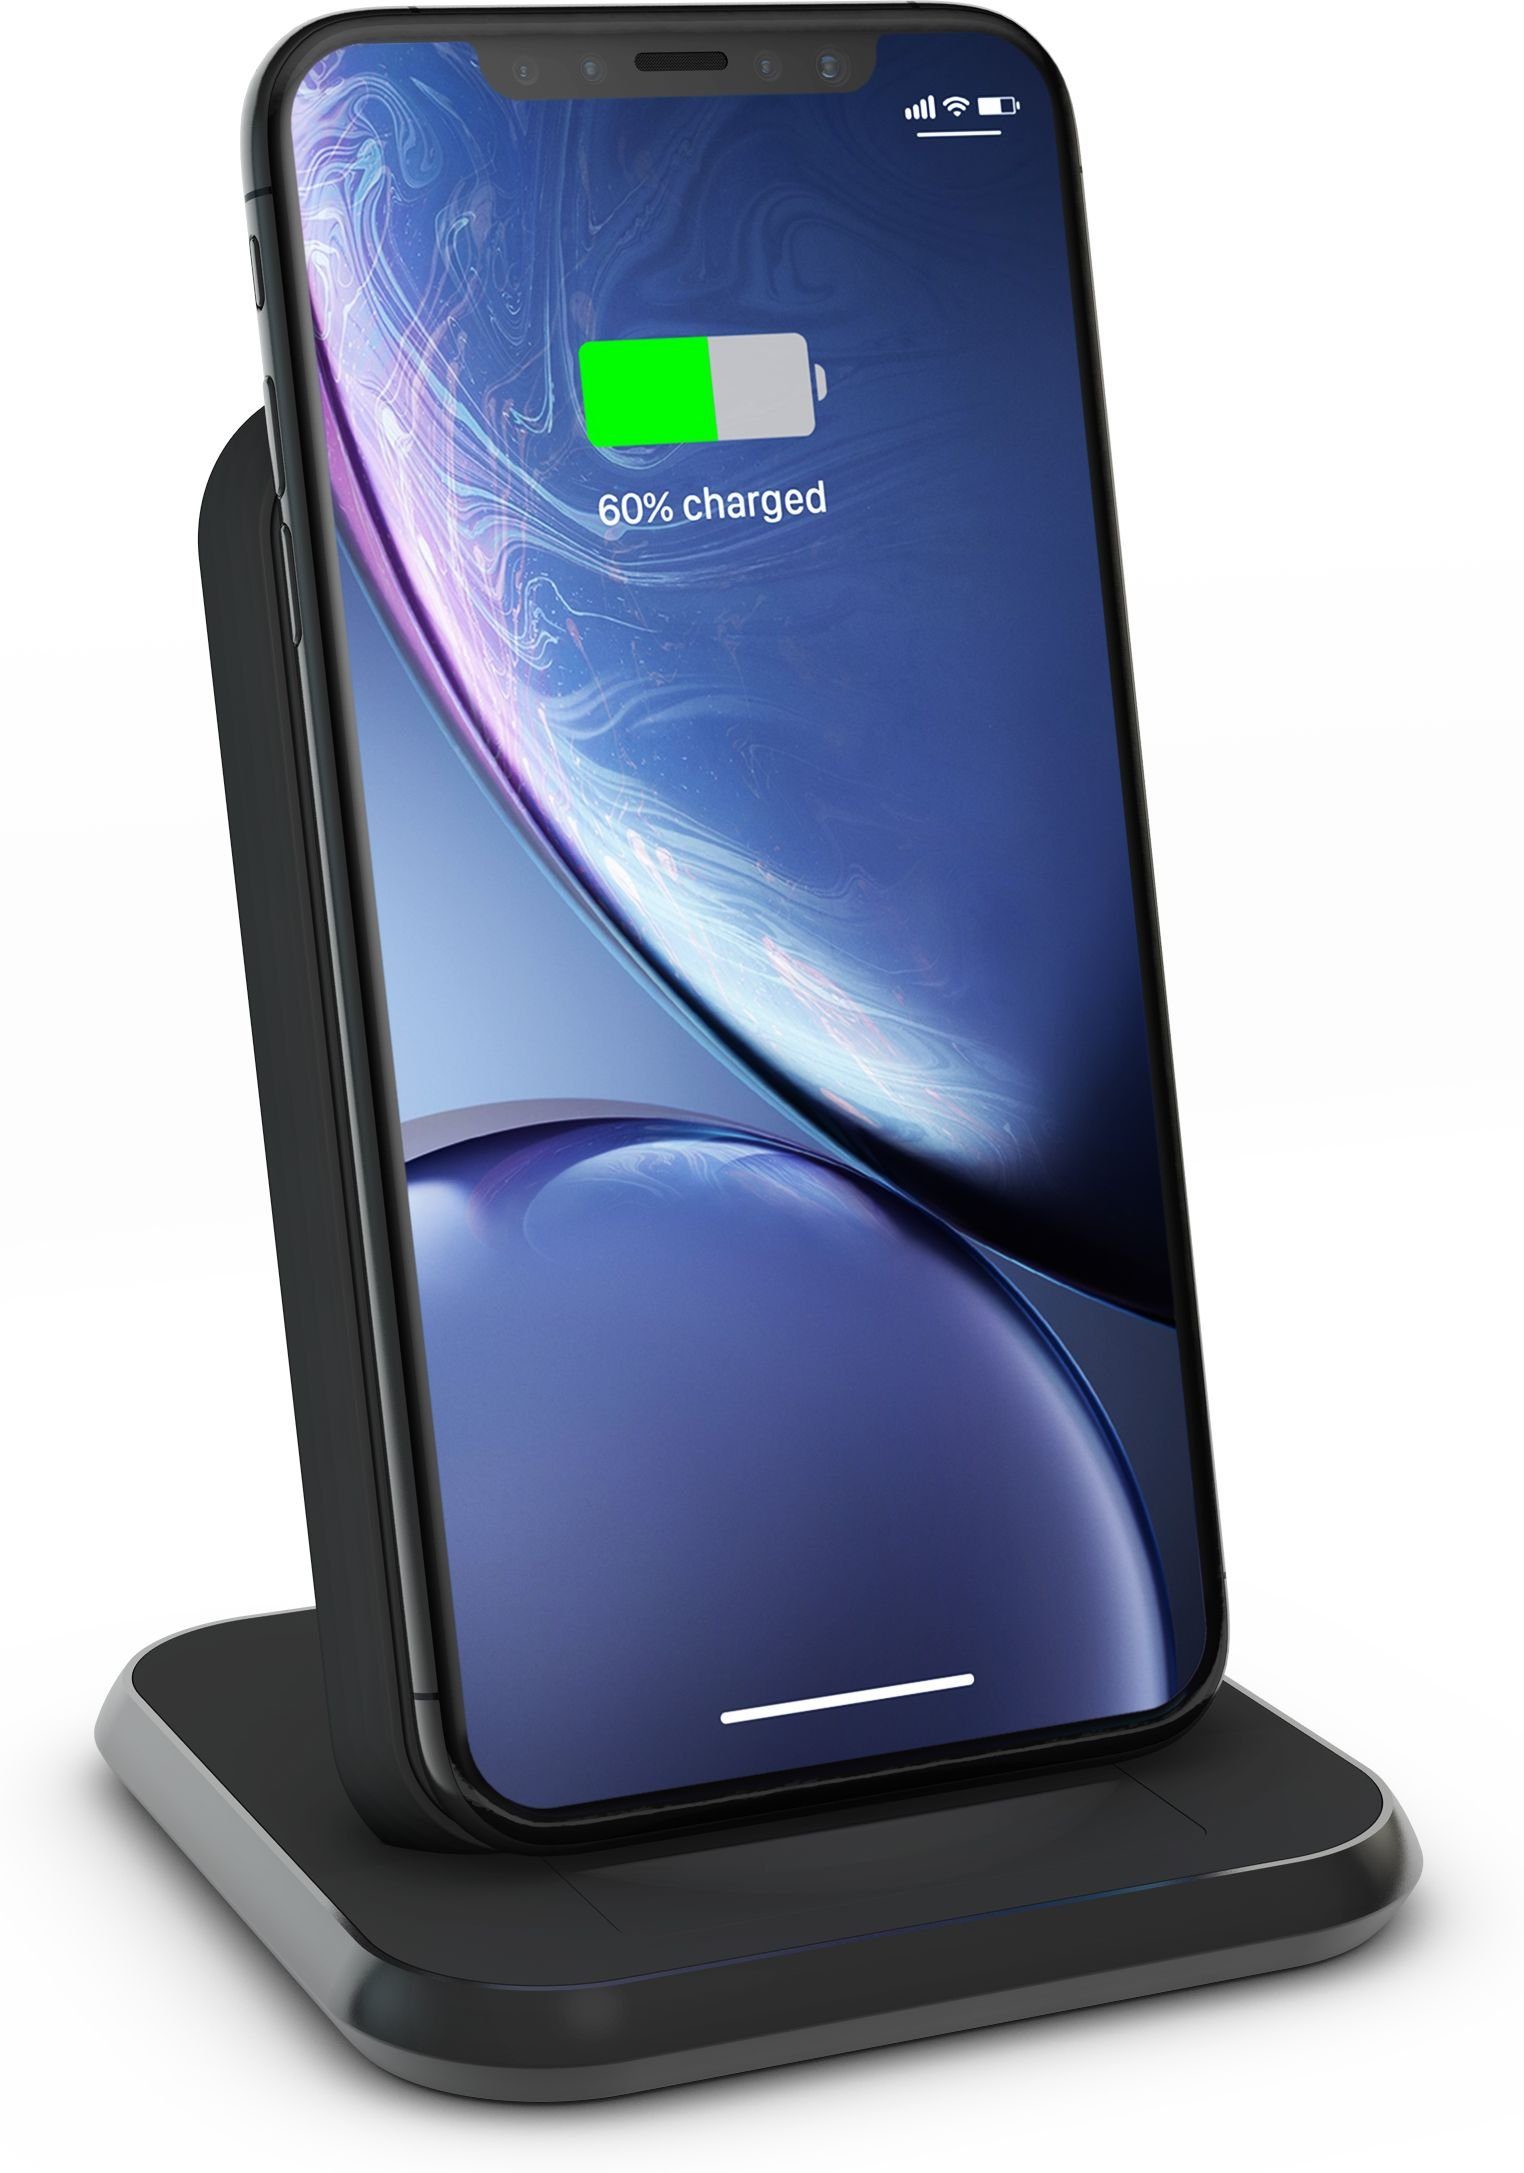 Zens Induktions-Ladegerät (Qi zertifizierter Aluminium Wireless Charger  Stand Schwarz, Unterstützt Fast Wireless Charging mit bis zu 10Watt, USB  Anschluss für weitere Geräte, Kompatibel mit allen Qi-fähigen Telefonen)  online kaufen | OTTO